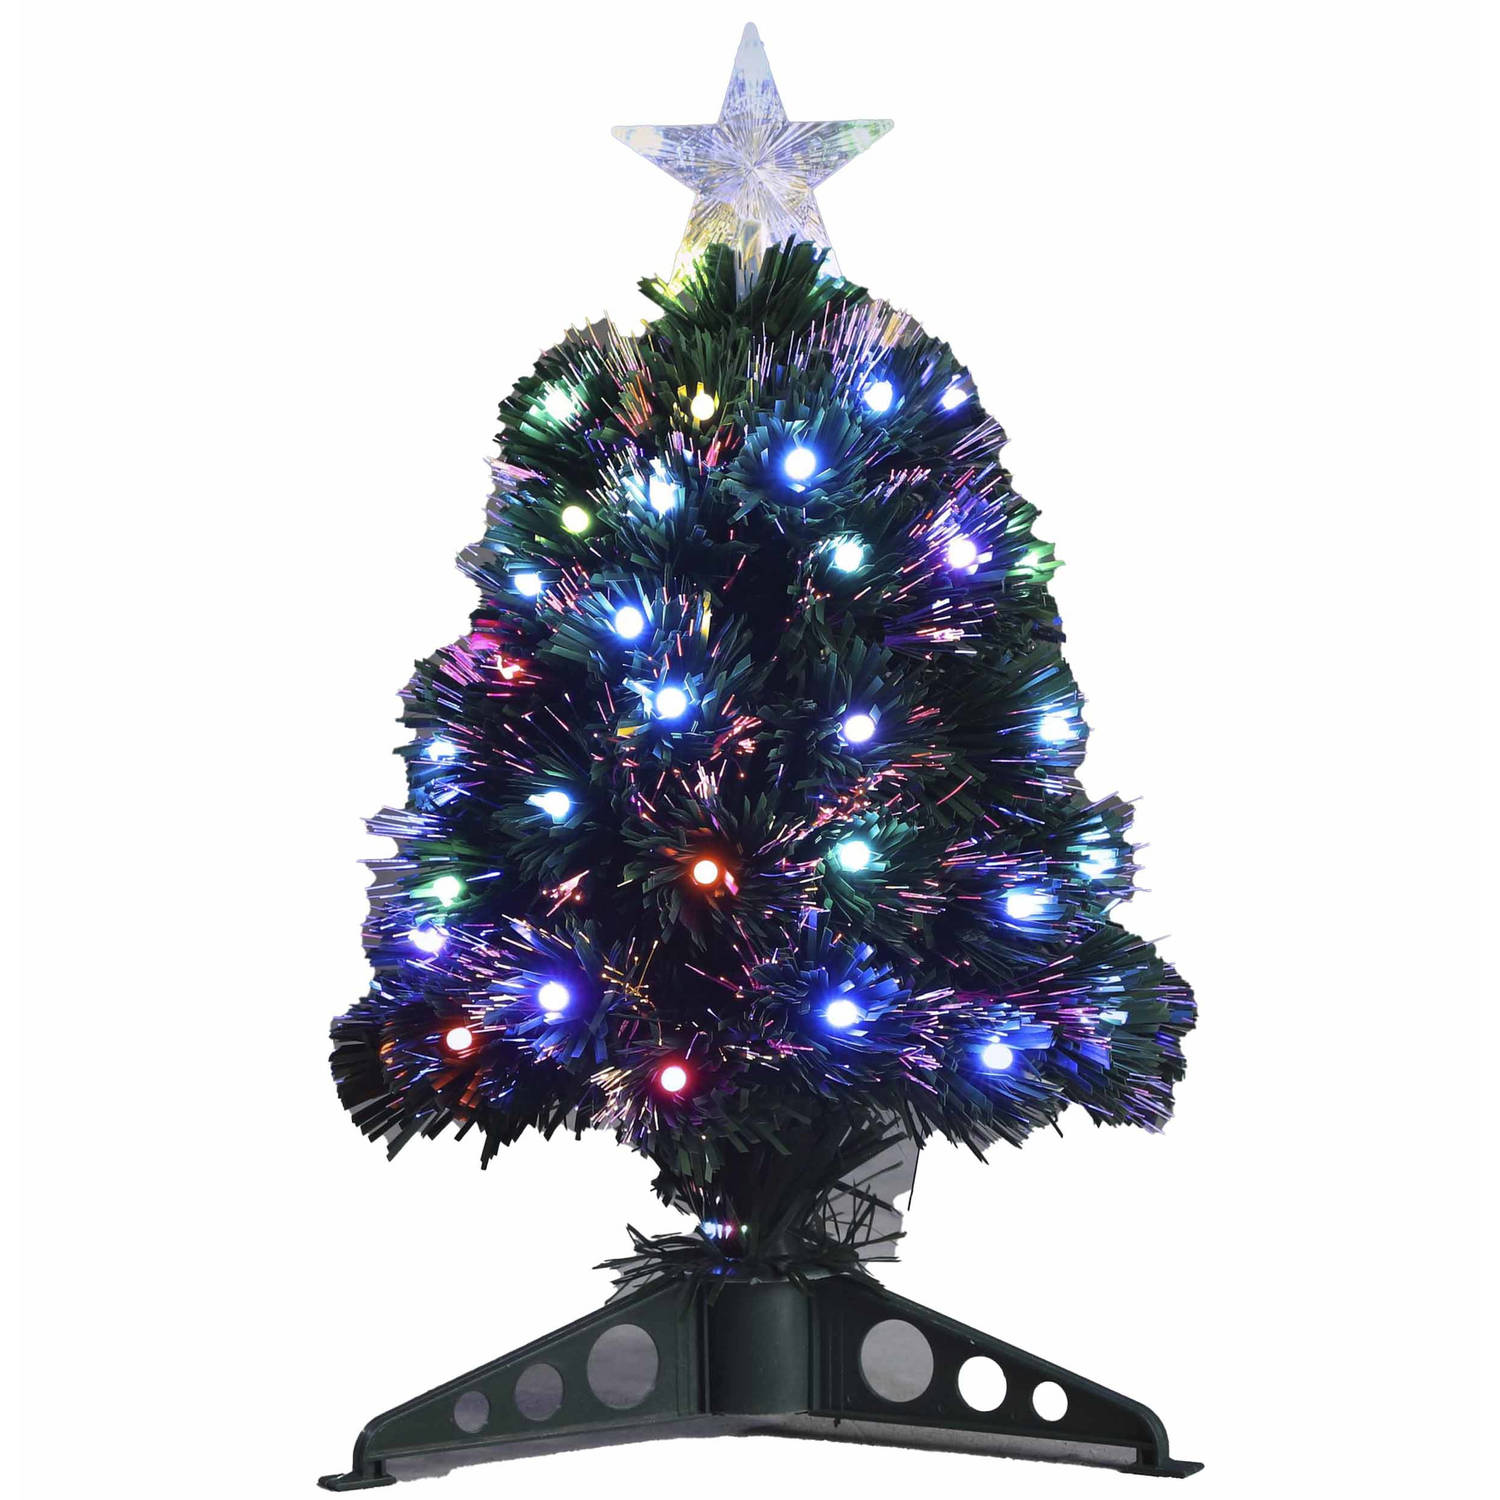 Weggelaten Ver weg Sprong Fiber optic kerstboom/kunst kerstboom met gekleurde lampjes 45 cm -  Kunstkerstboom | Blokker